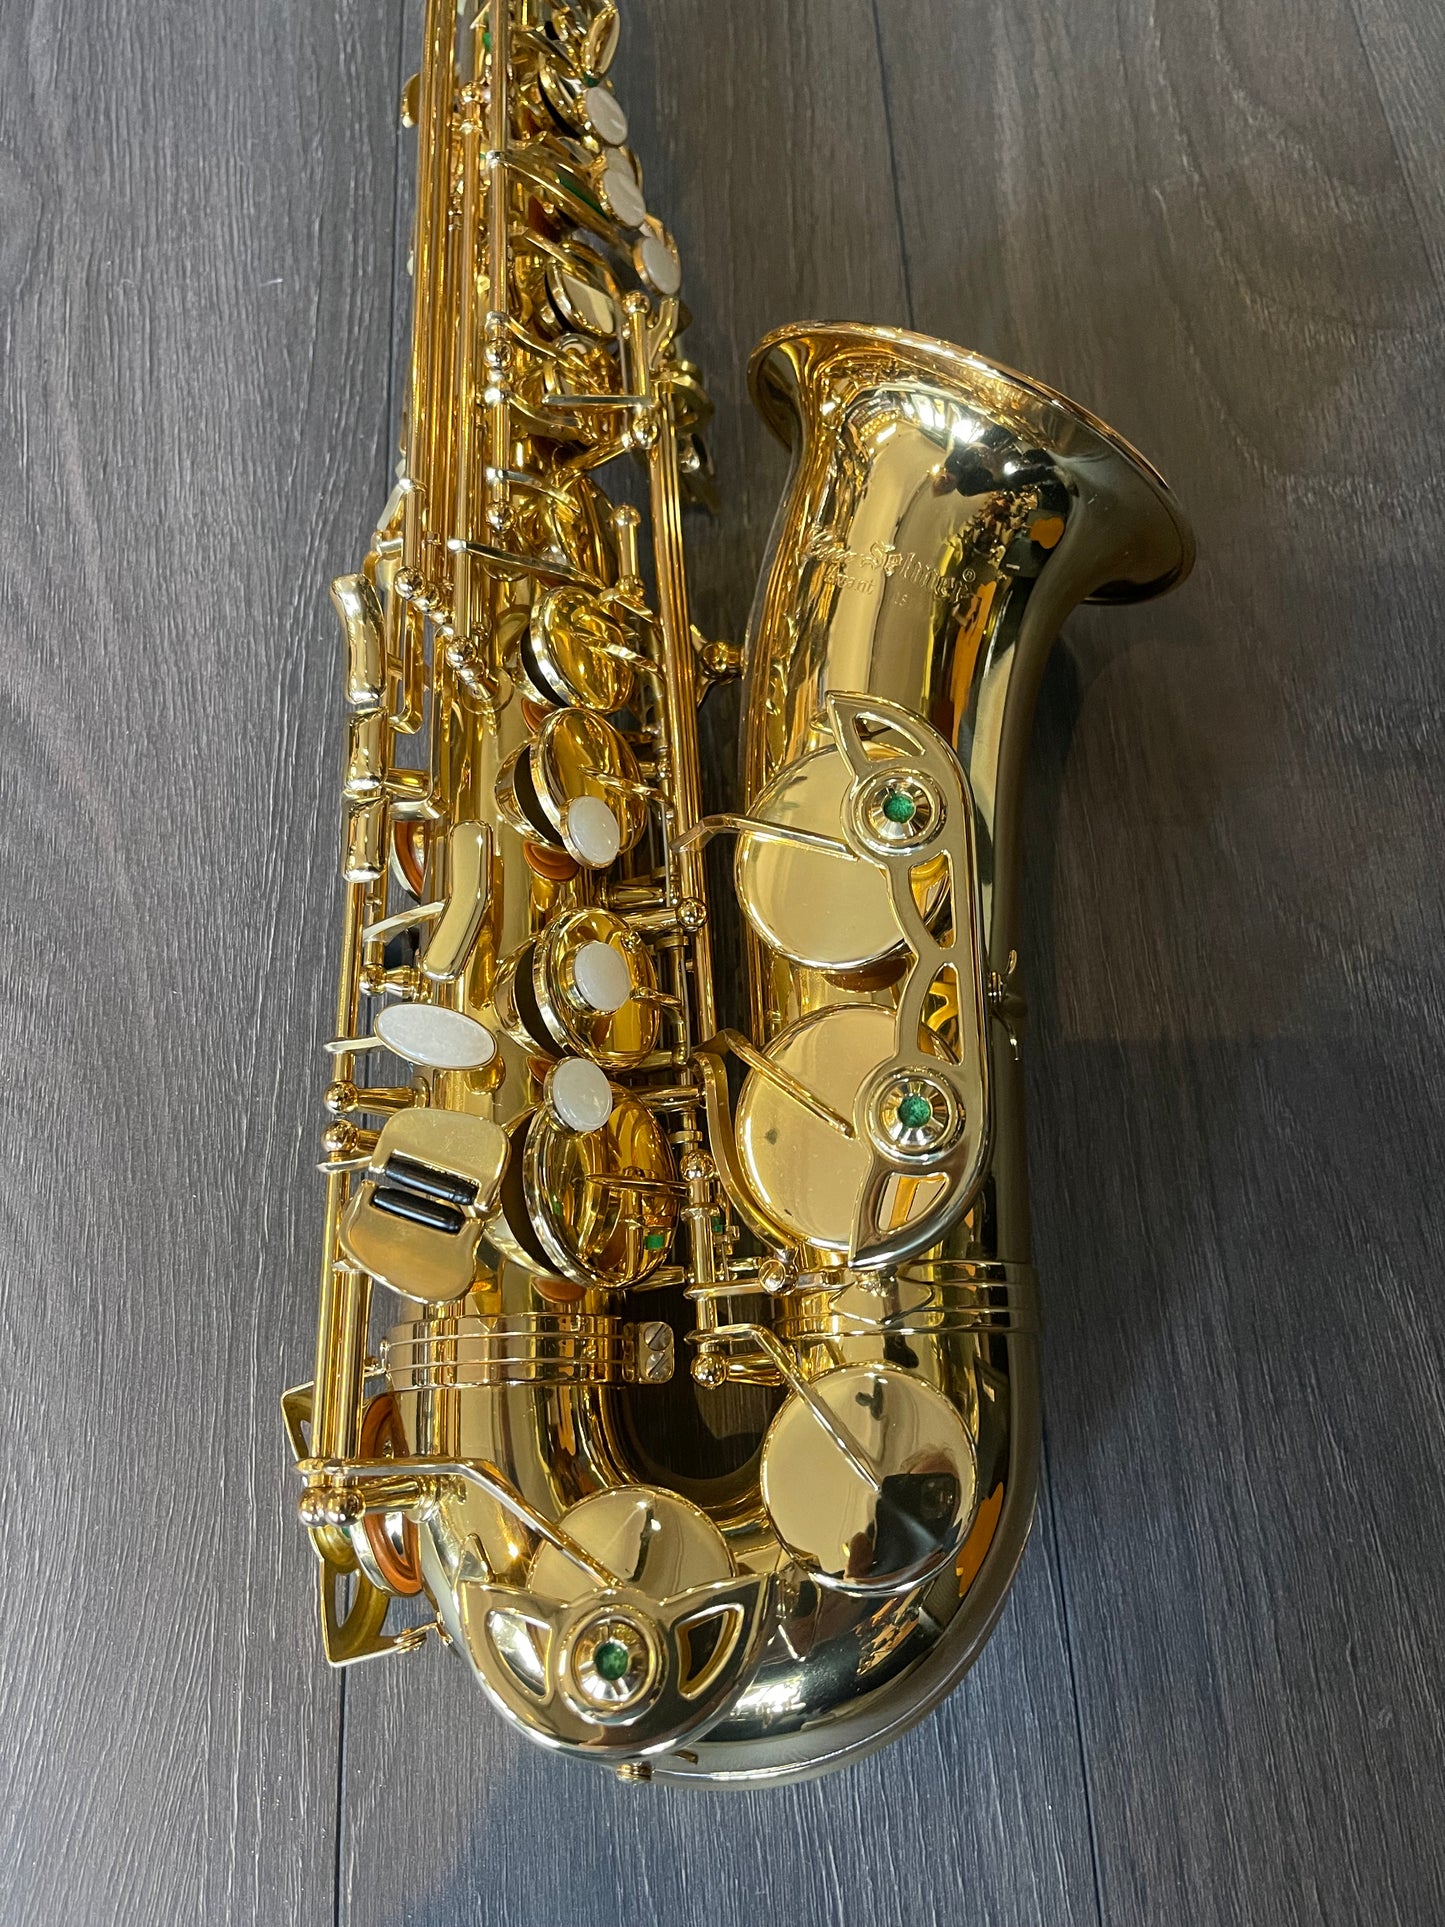 Conn Selmer Avant DAS 180 Alto Saxophone Gold Lacquer